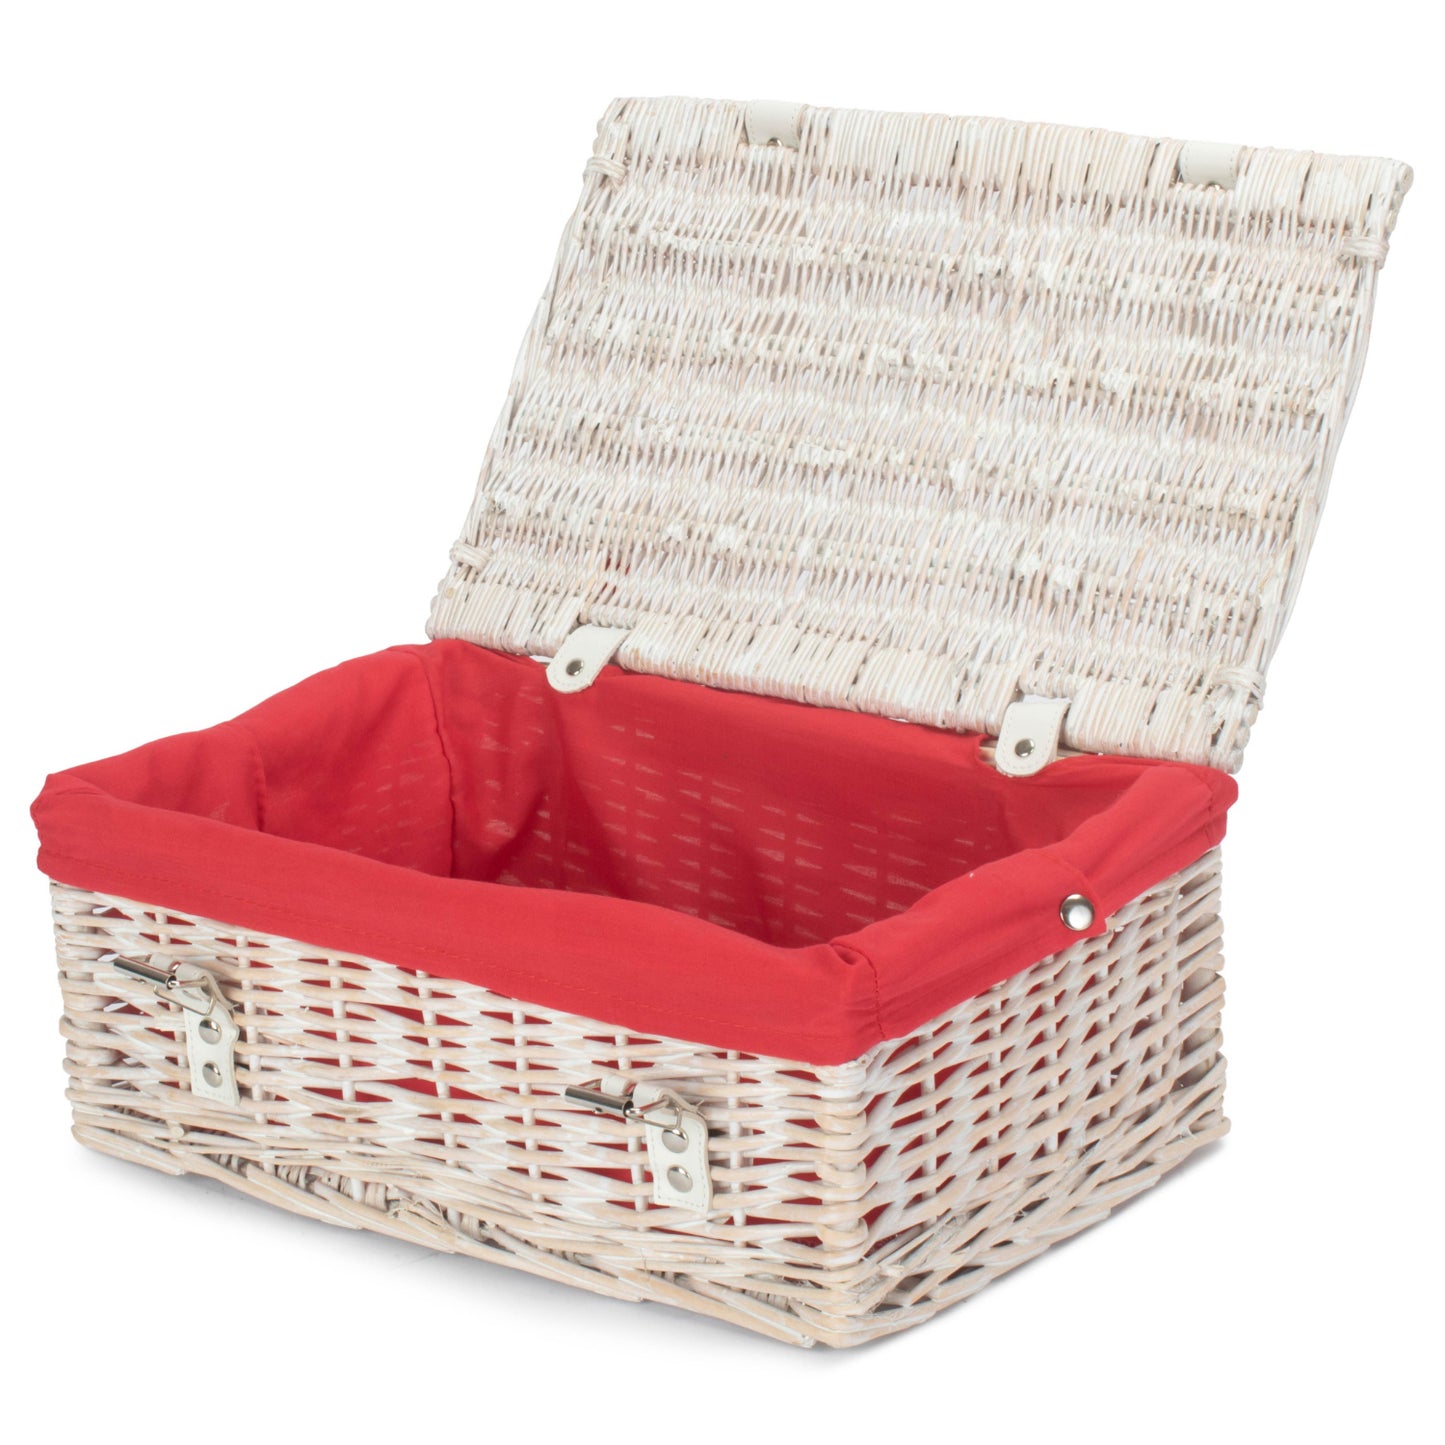 14 Inch Empty Wicker Hamper Basket - White Wash - Red Lining